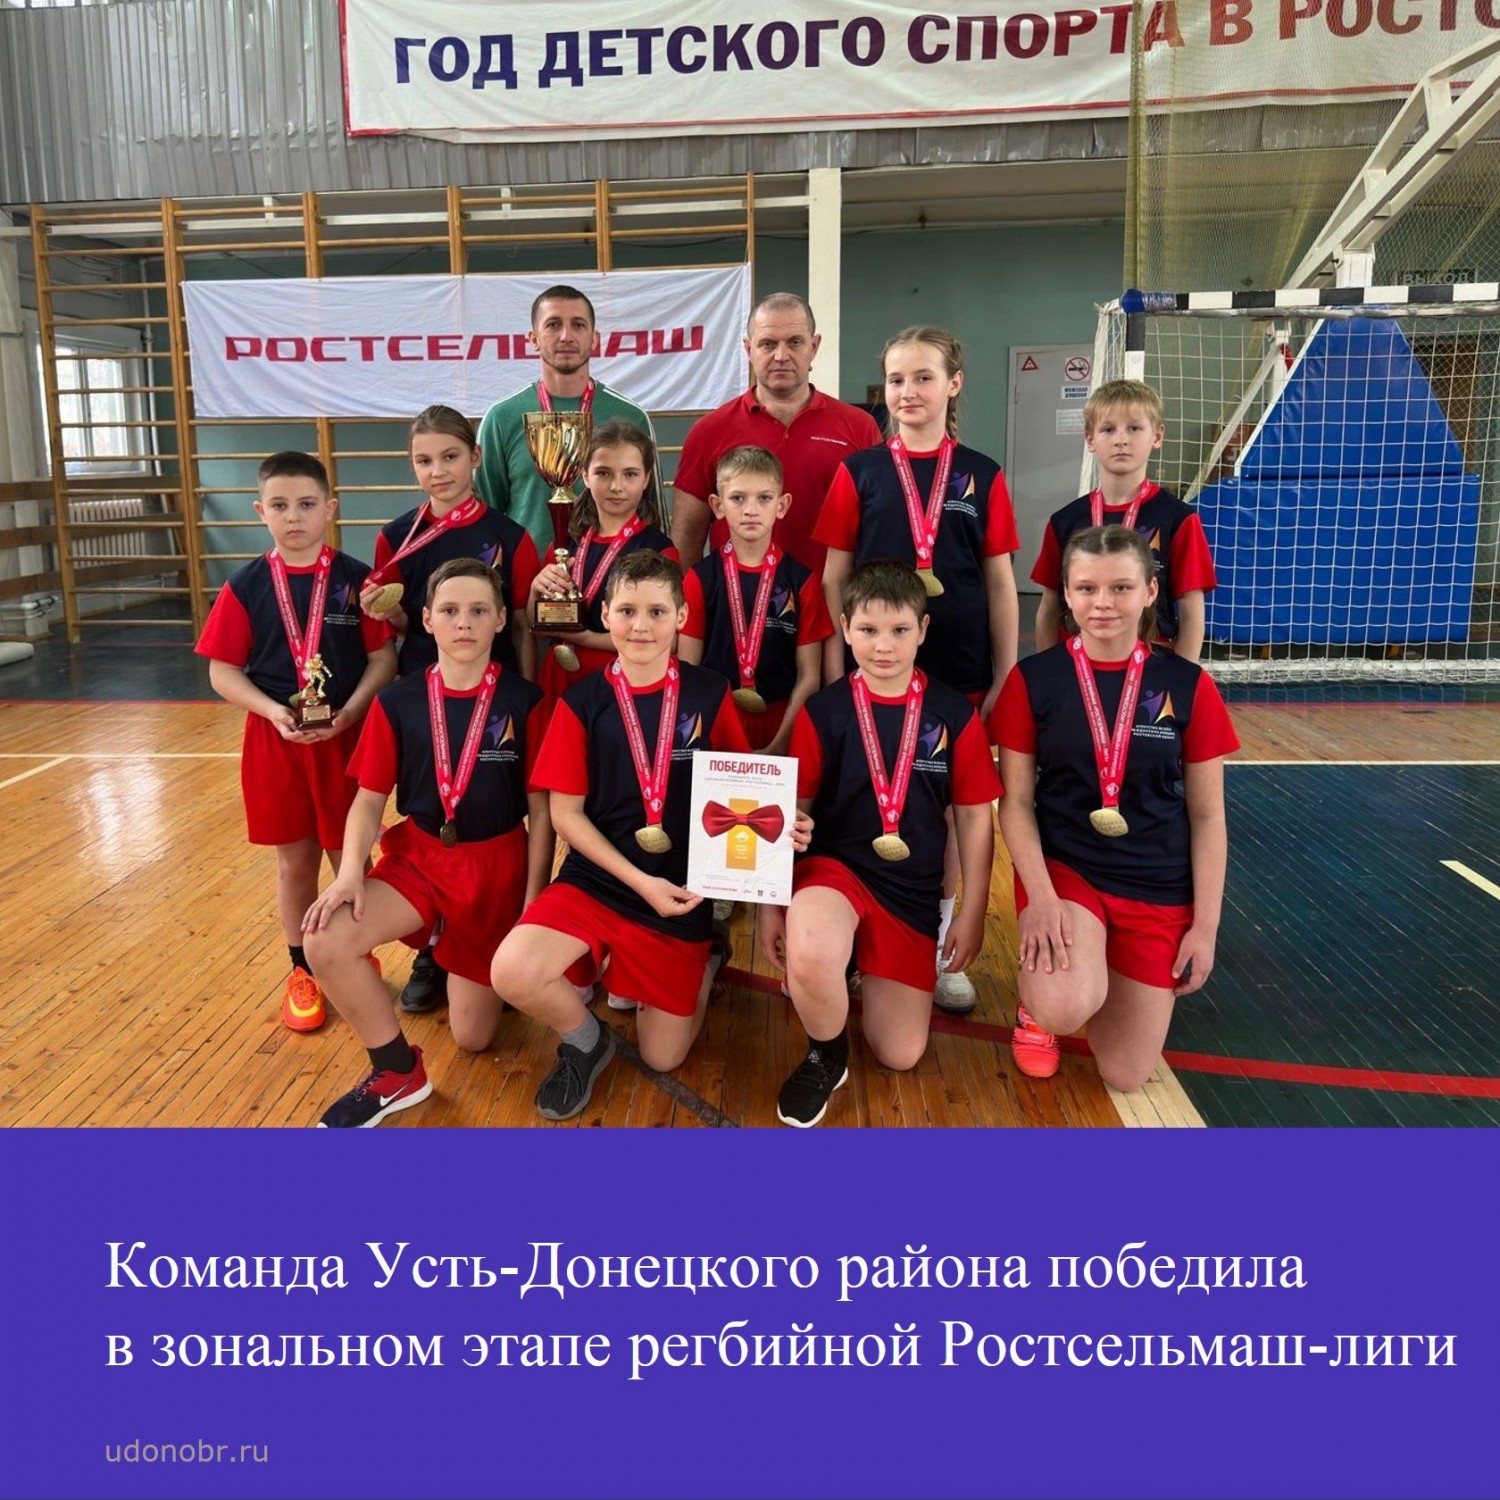 Команда Усть-Донецкого района победила в зональном этапе регбийной Ростсельмаш-лиги